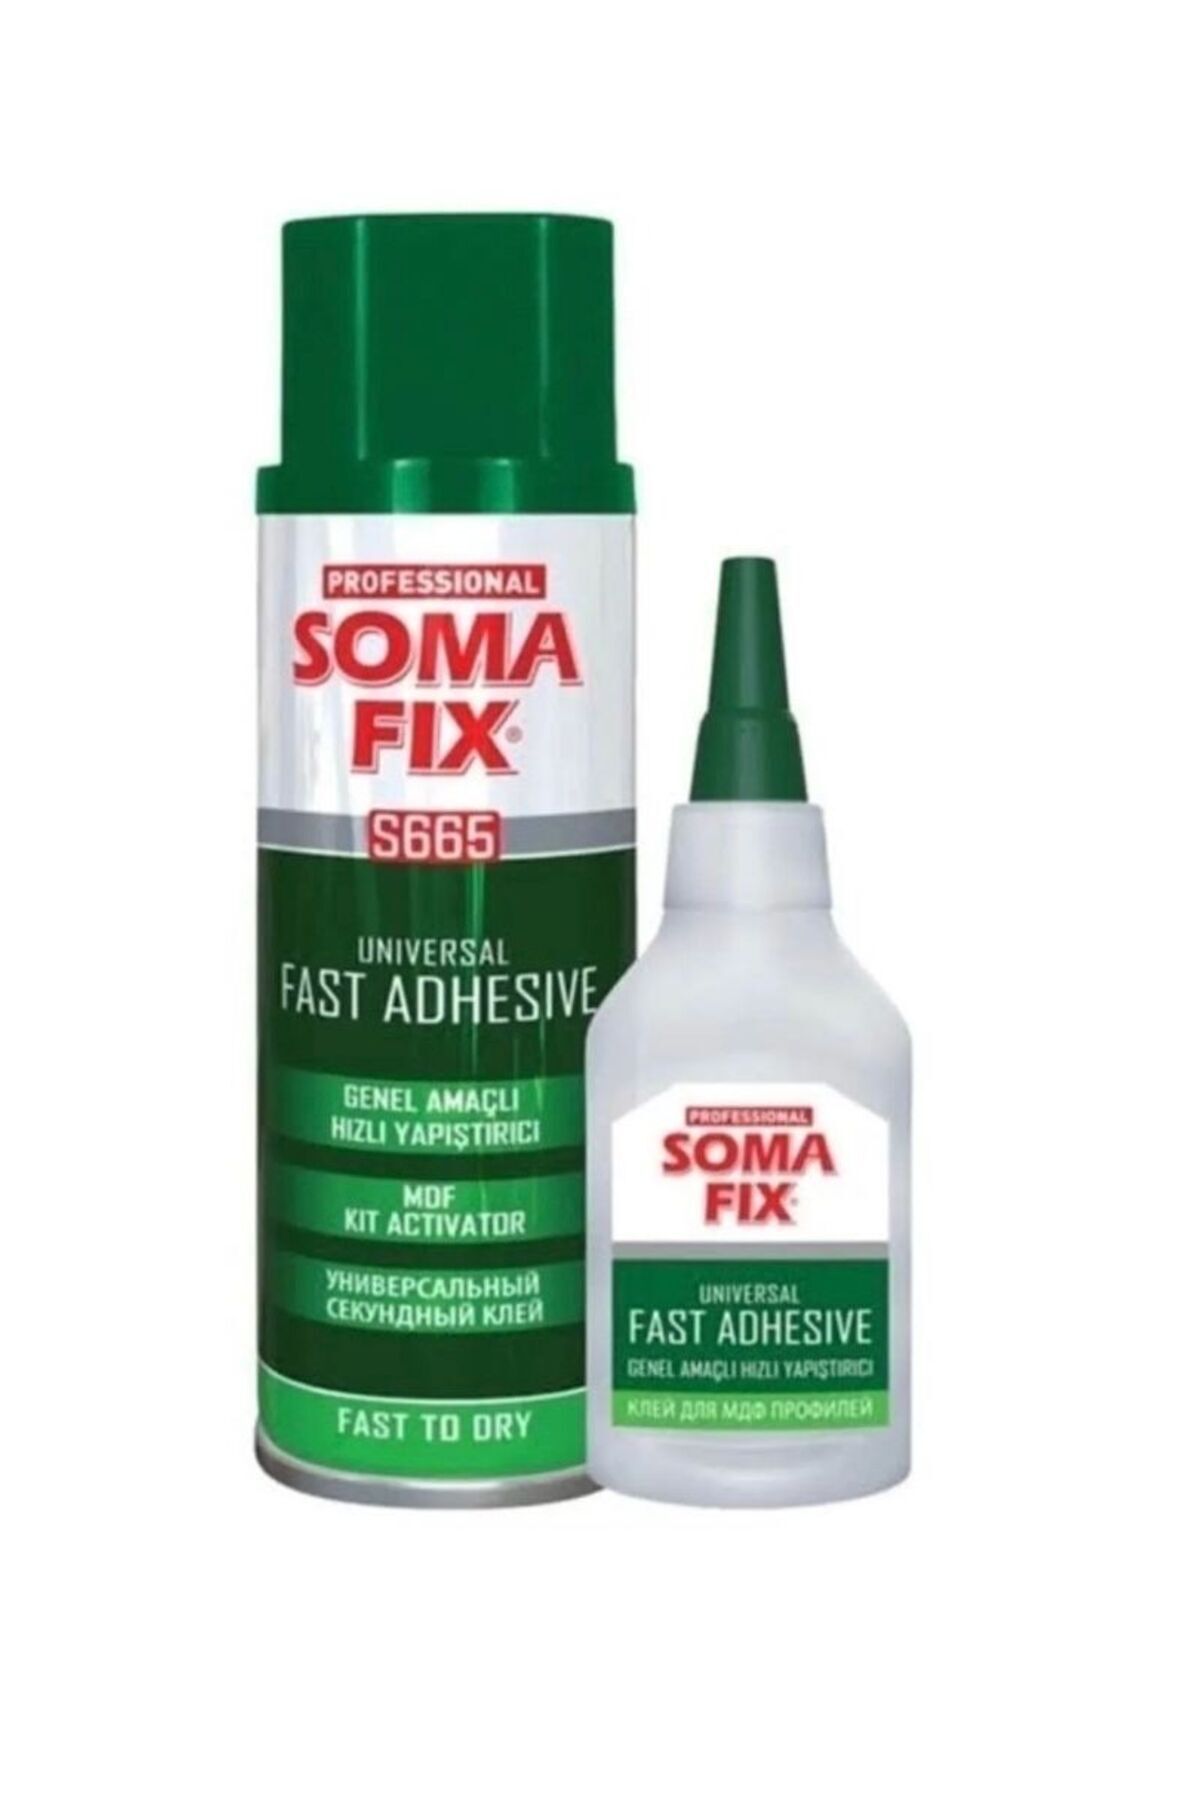 Somafix Soma fix 400ml hızlı yapıştırıcı